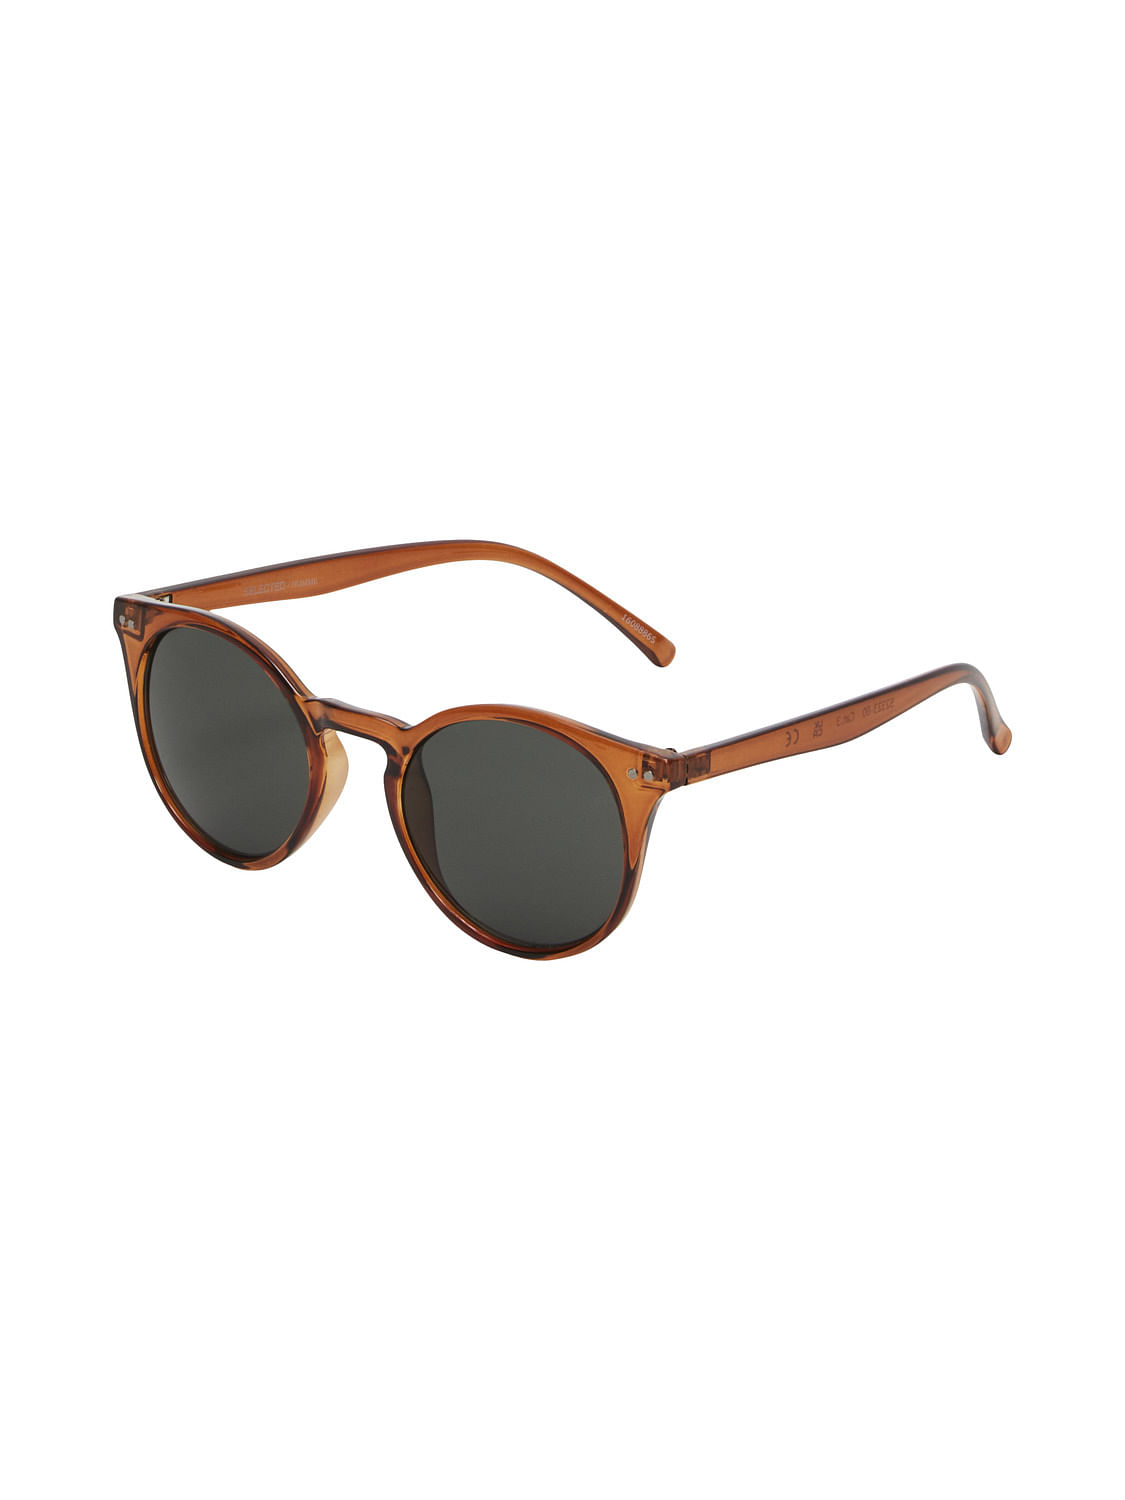 Unisex Round Sunglasses – Stylish & Durable